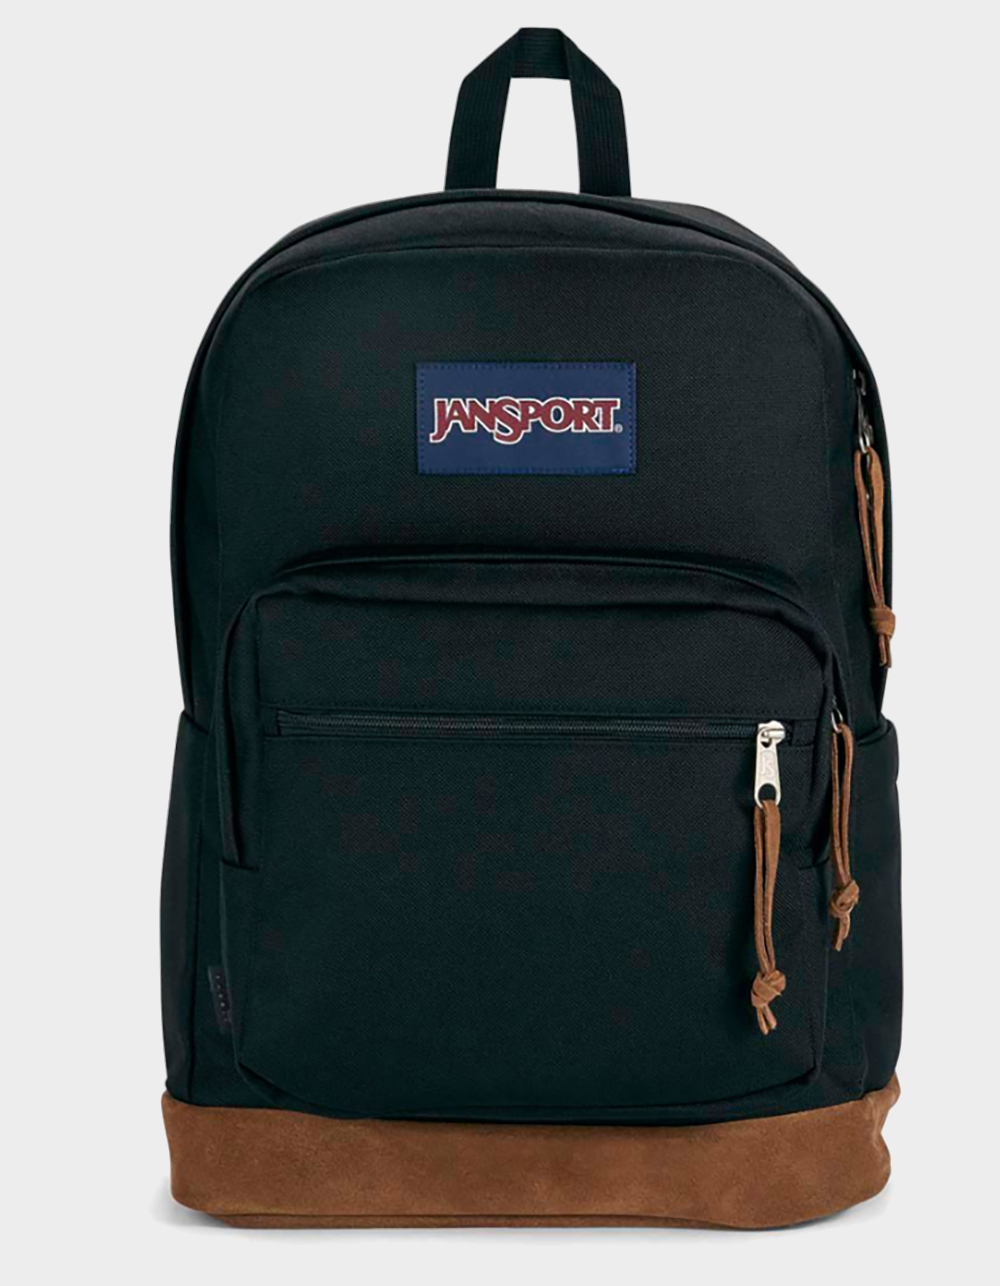 Designer School Backpacks for Sale